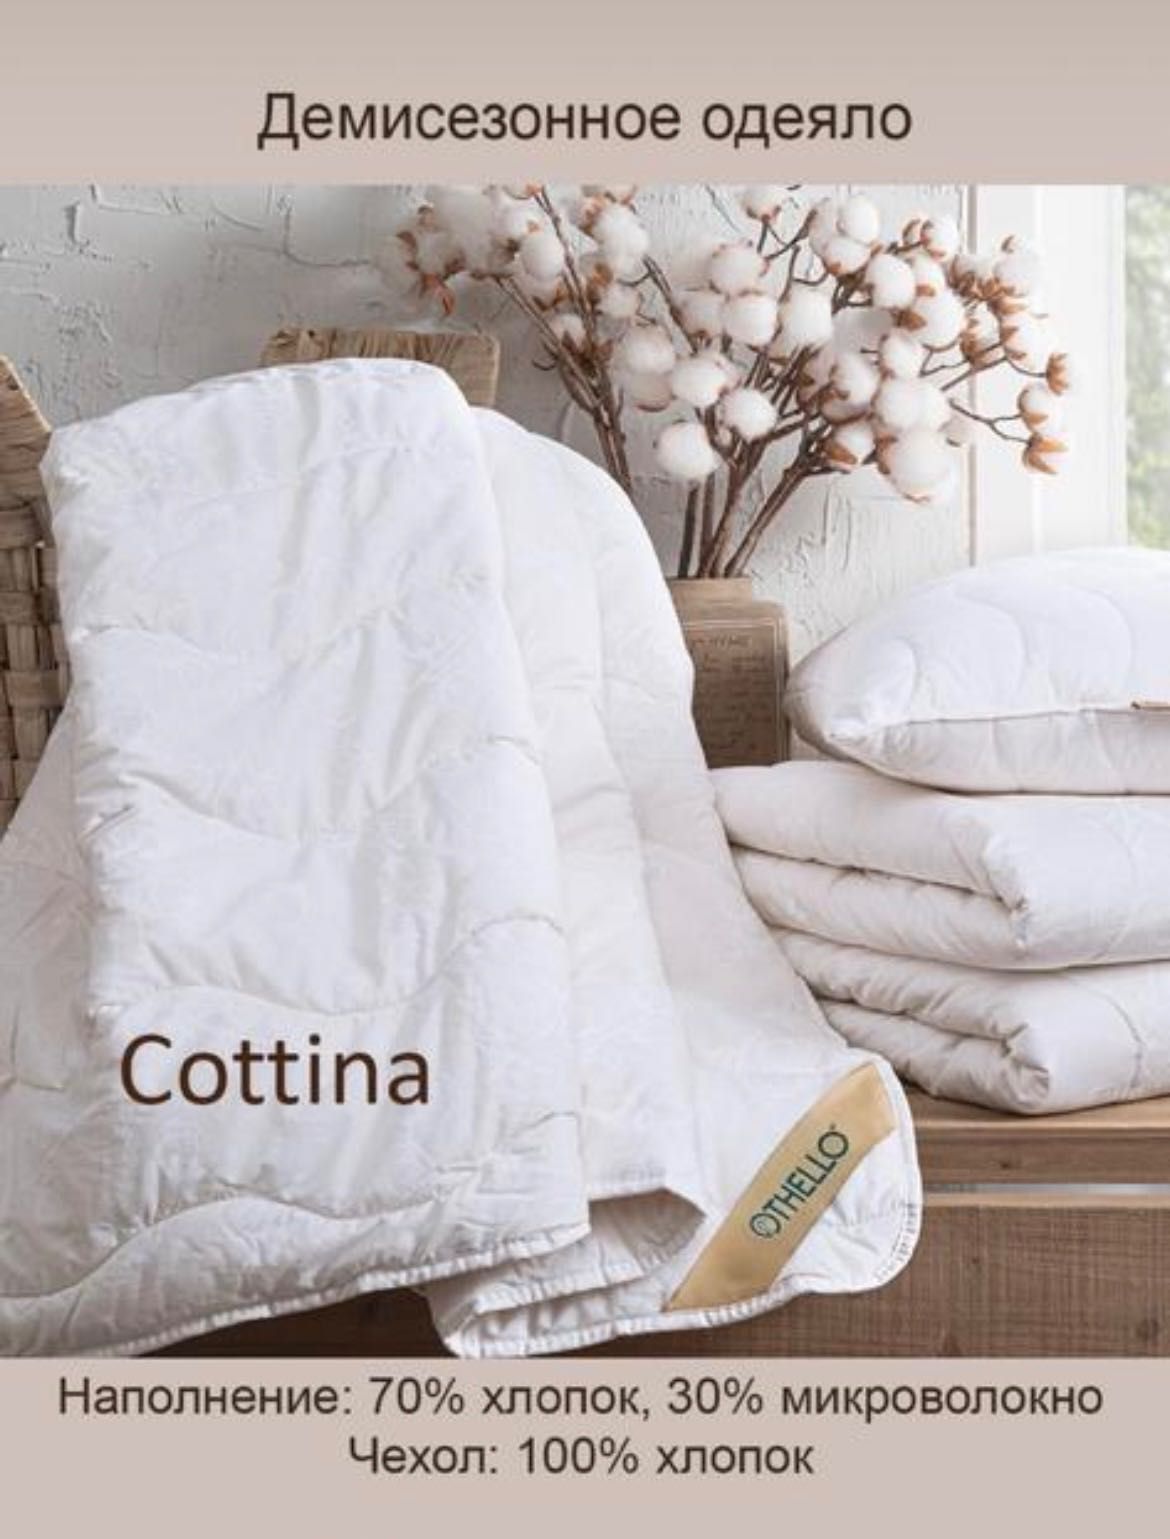 Продам демисезонное одеяло Турция  от фирмы OTHELLO COTTINA 2–х спал.